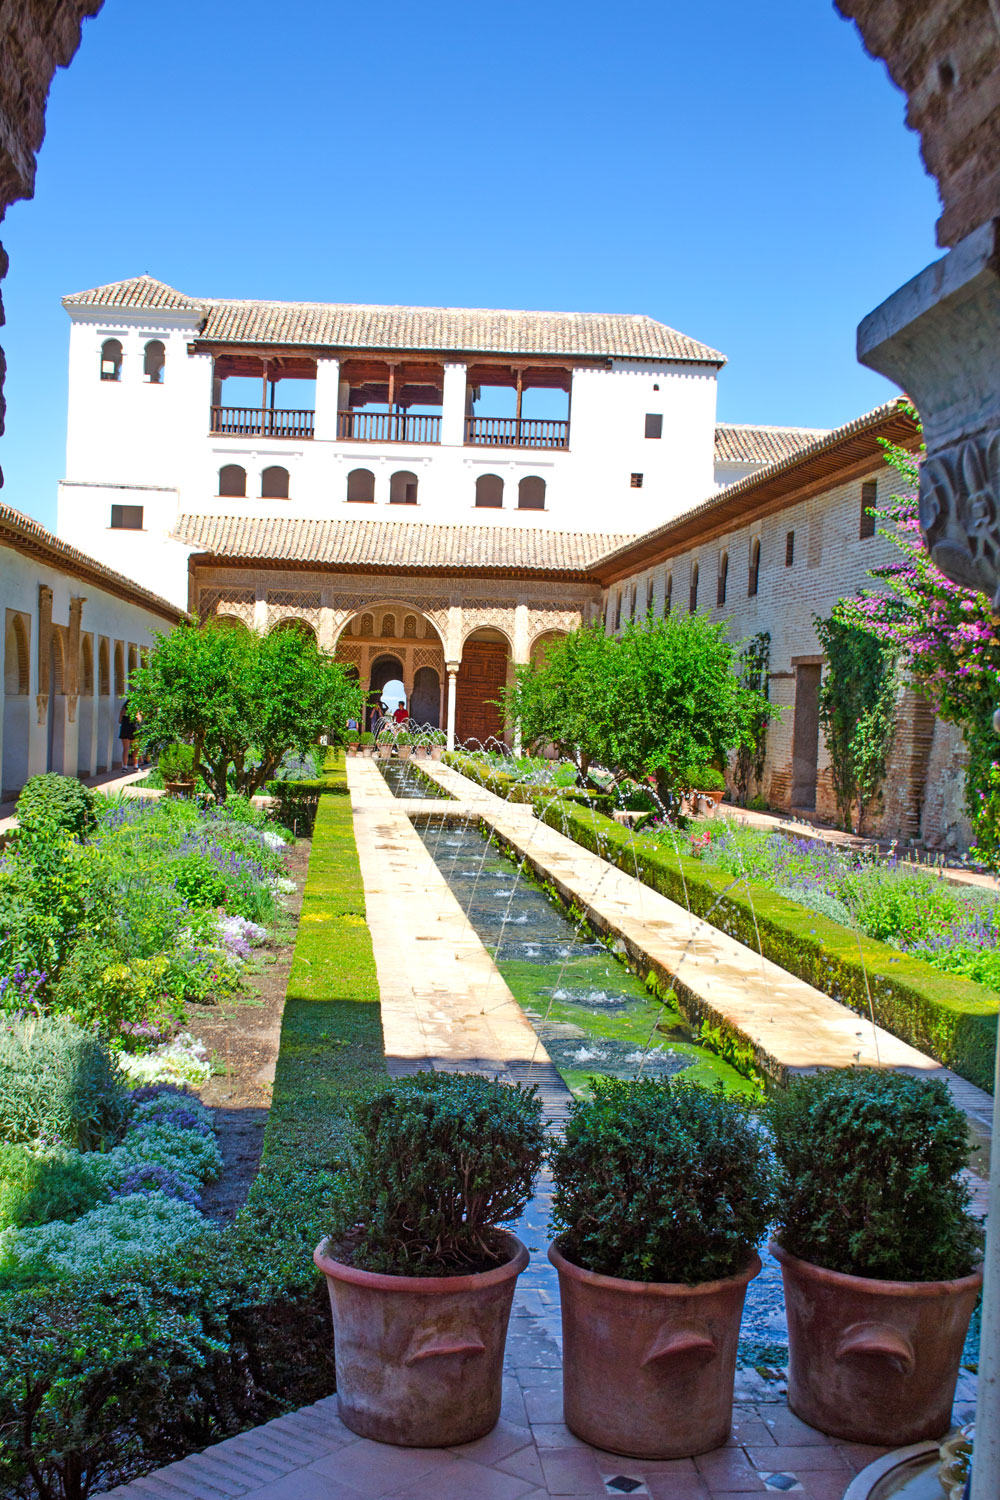 [unbezahlte werbung] La Alhambra - Was man für einen Besuch wissen muss | BLOG JAHRESRÜCKBLICK 2019 | DIE ERFOLGREICHSTEN BEITRÄGE #stylepeacock2019